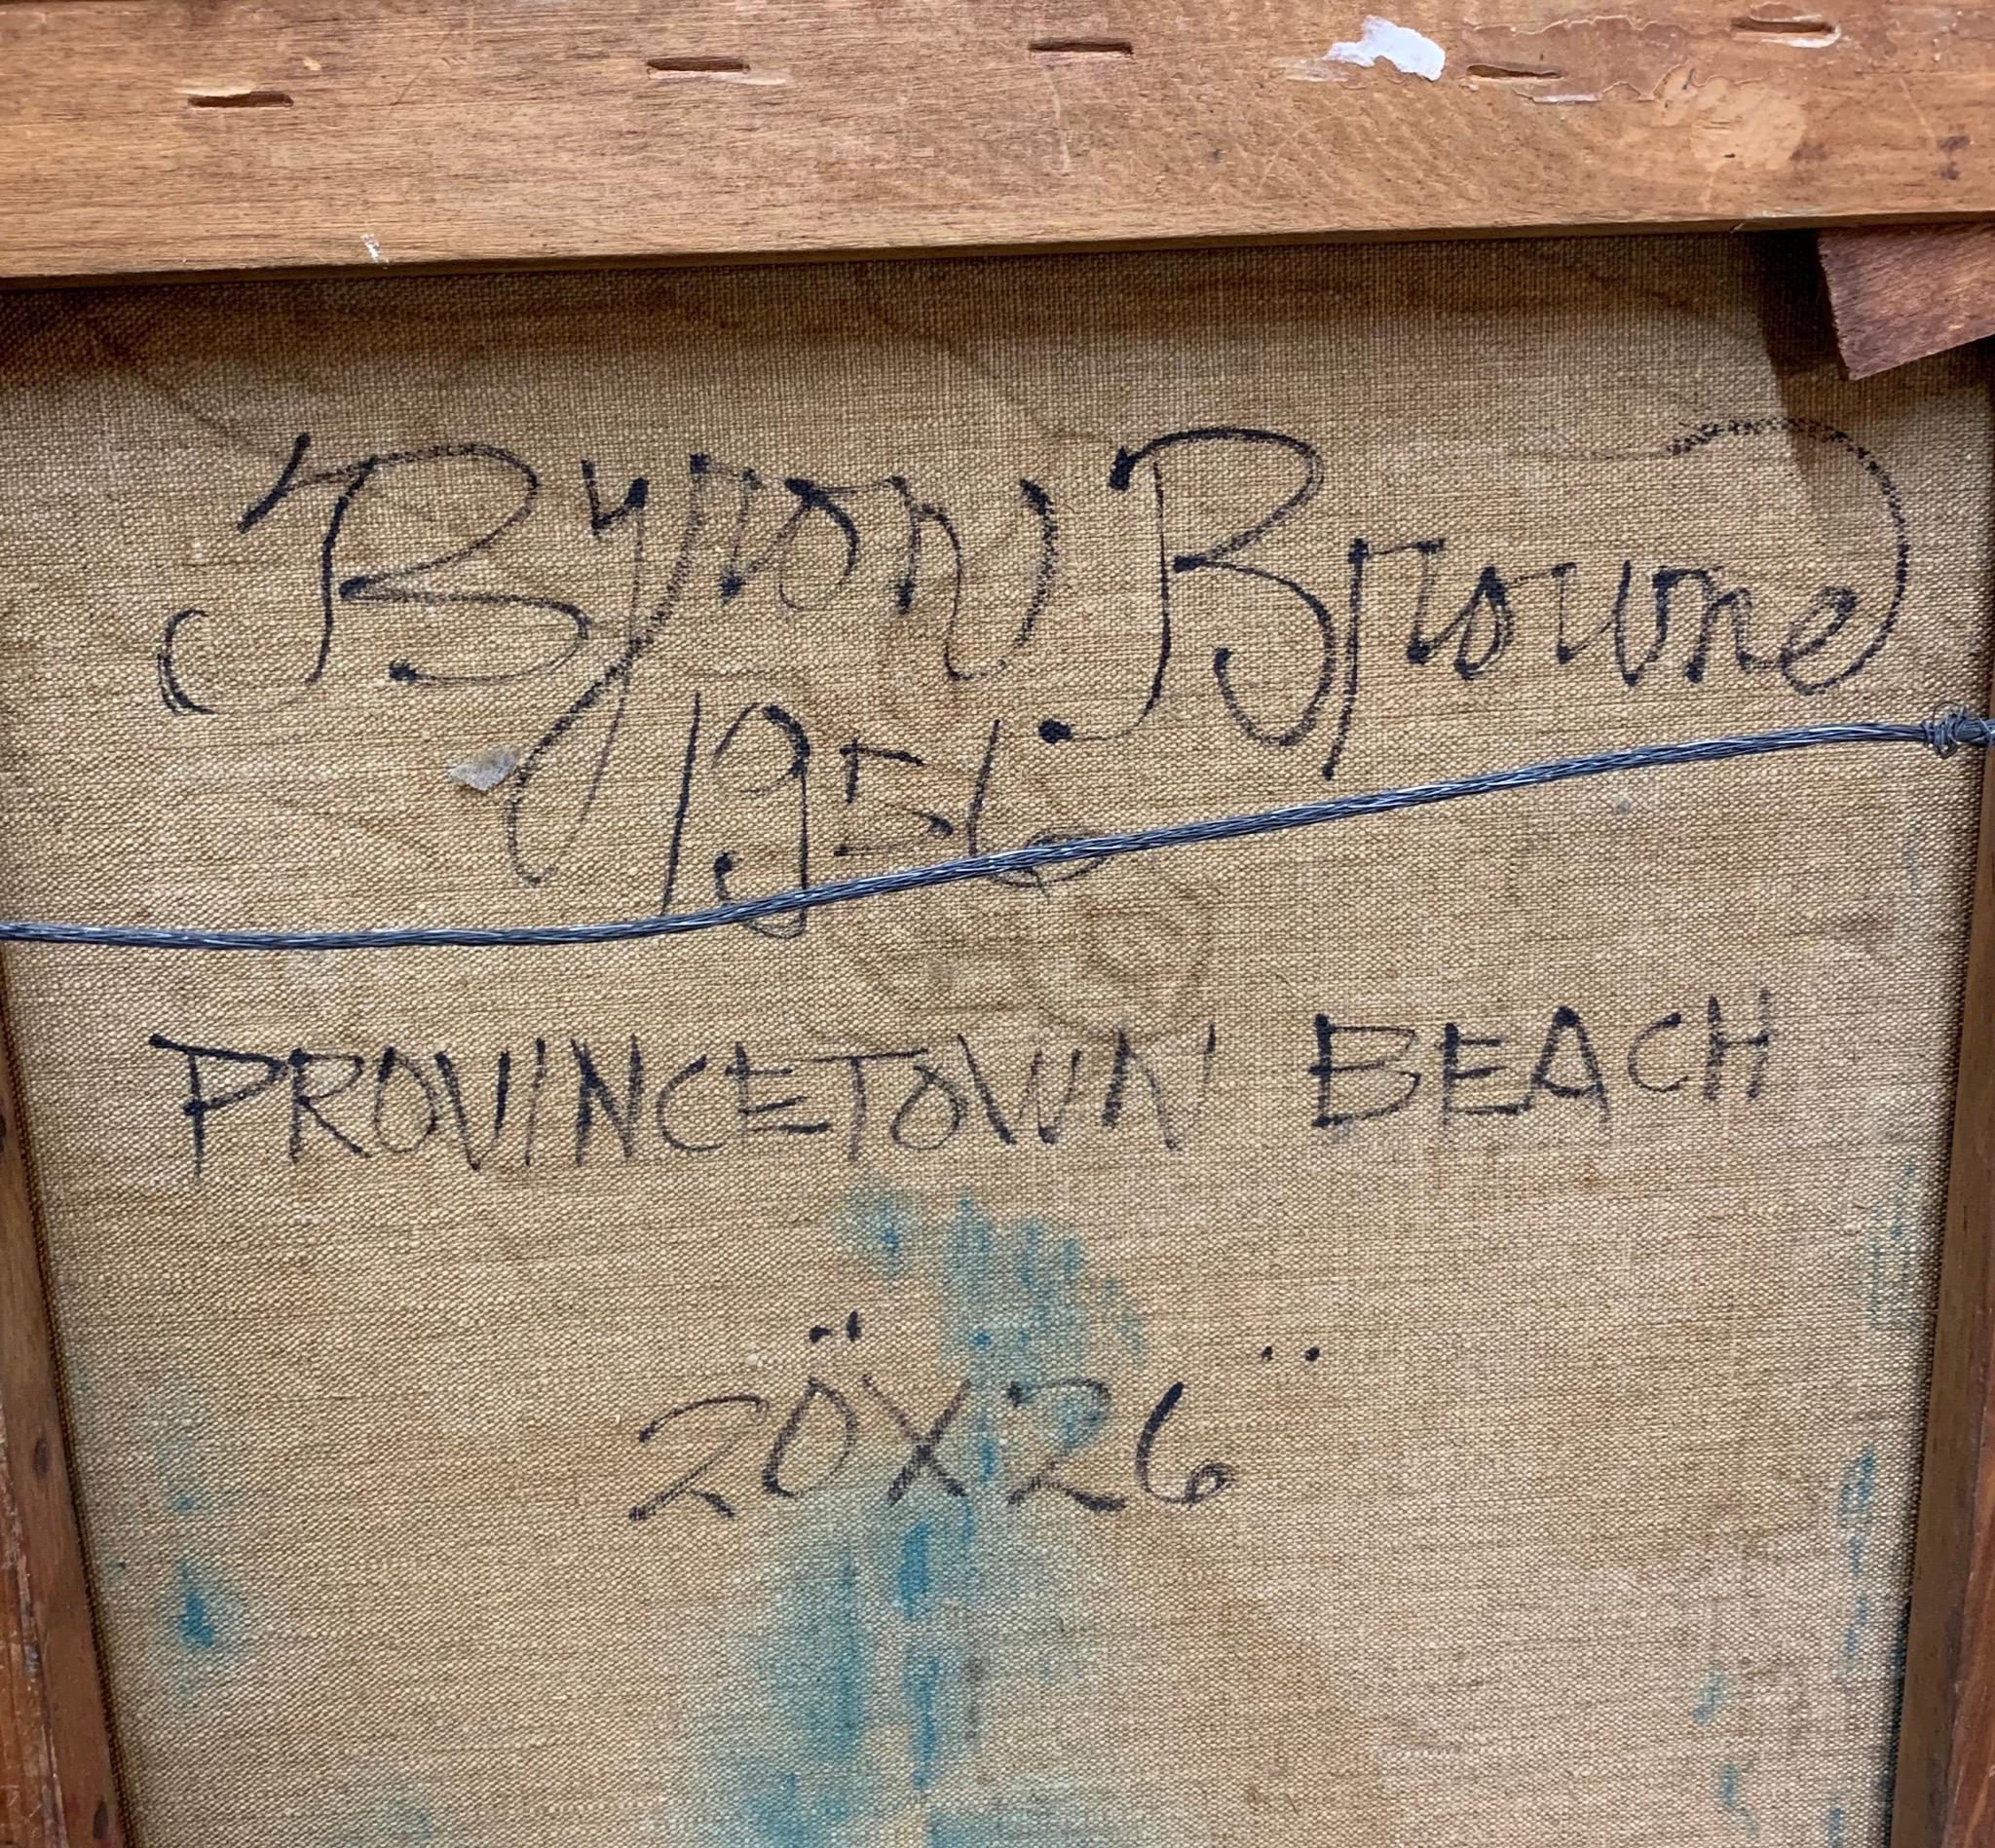 Wunderschönes fauvistisches postimpressionistisches Provincetown Beach am FLAG DAY von Byron Browne (1907-1961).  Öl auf Leinwand, datiert 1956.  Signiert unten rechts.  Angezeigt in einem modernen vergoldeten Rahmen, insgesamt mit Rahmen 30x24 Zoll